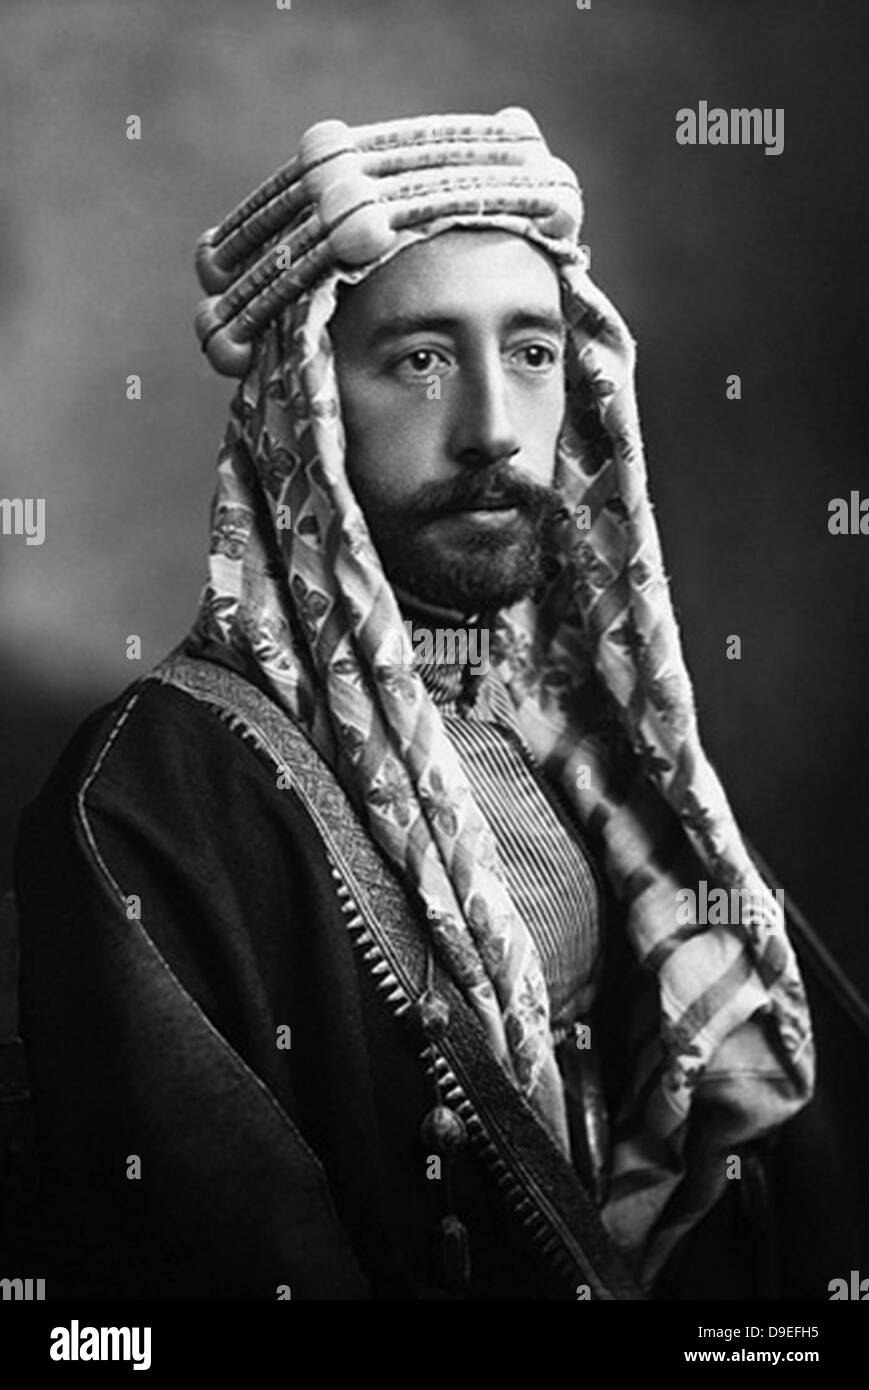 FAISAL 1 DELL'IRAQ (1885-1933) della dinastia Hashmite Foto Stock